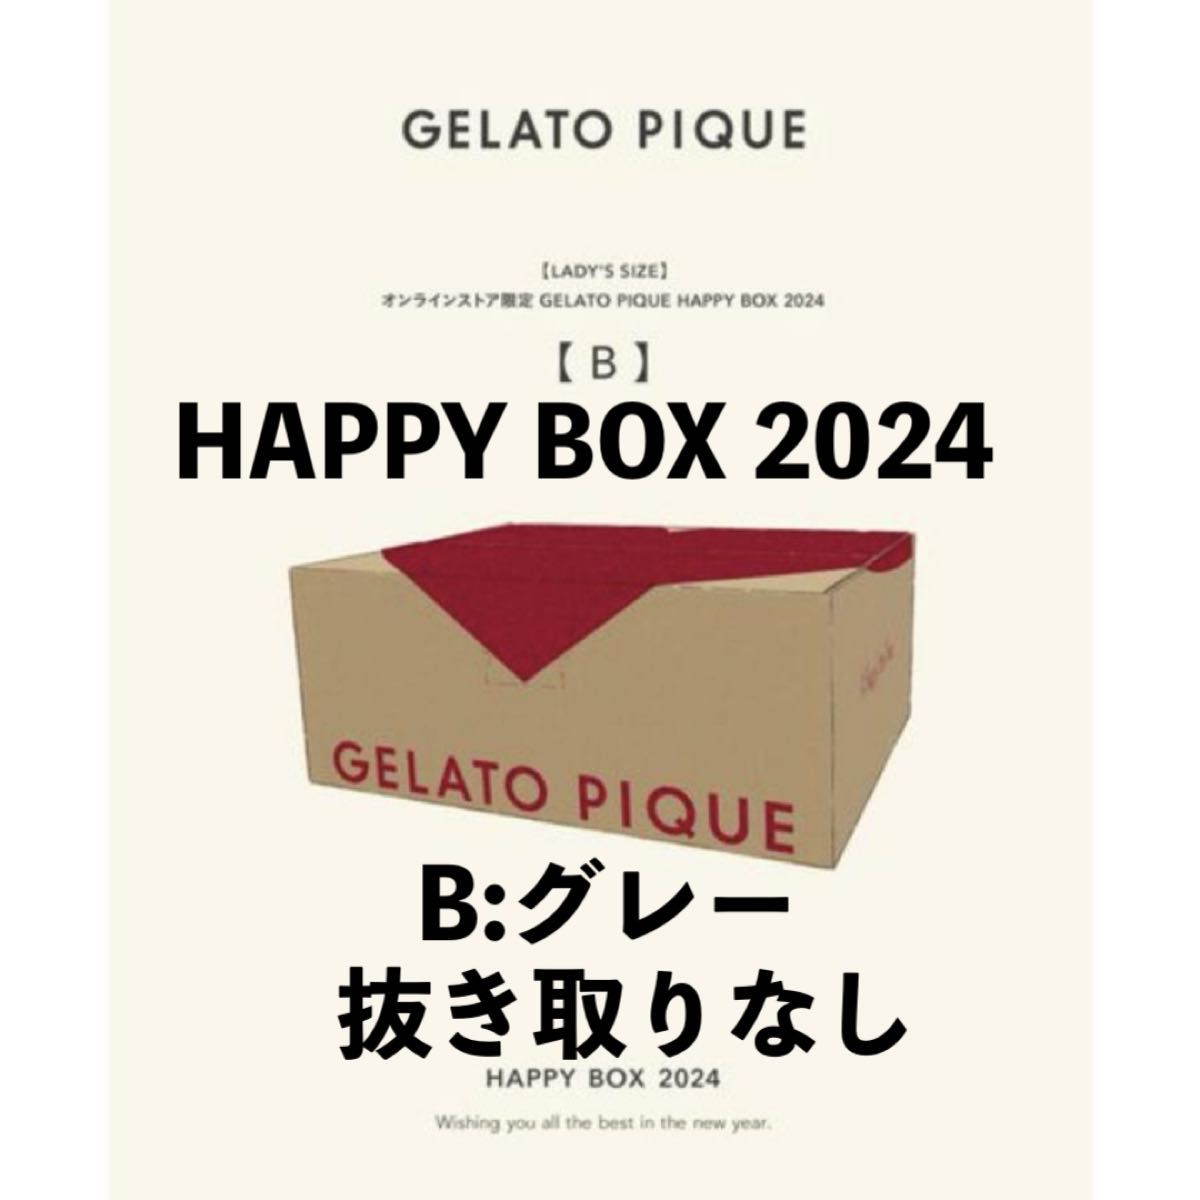 経典ブランド 【福袋】【gelato BOX pique】2024年 HAPPY BOX HAPPY B